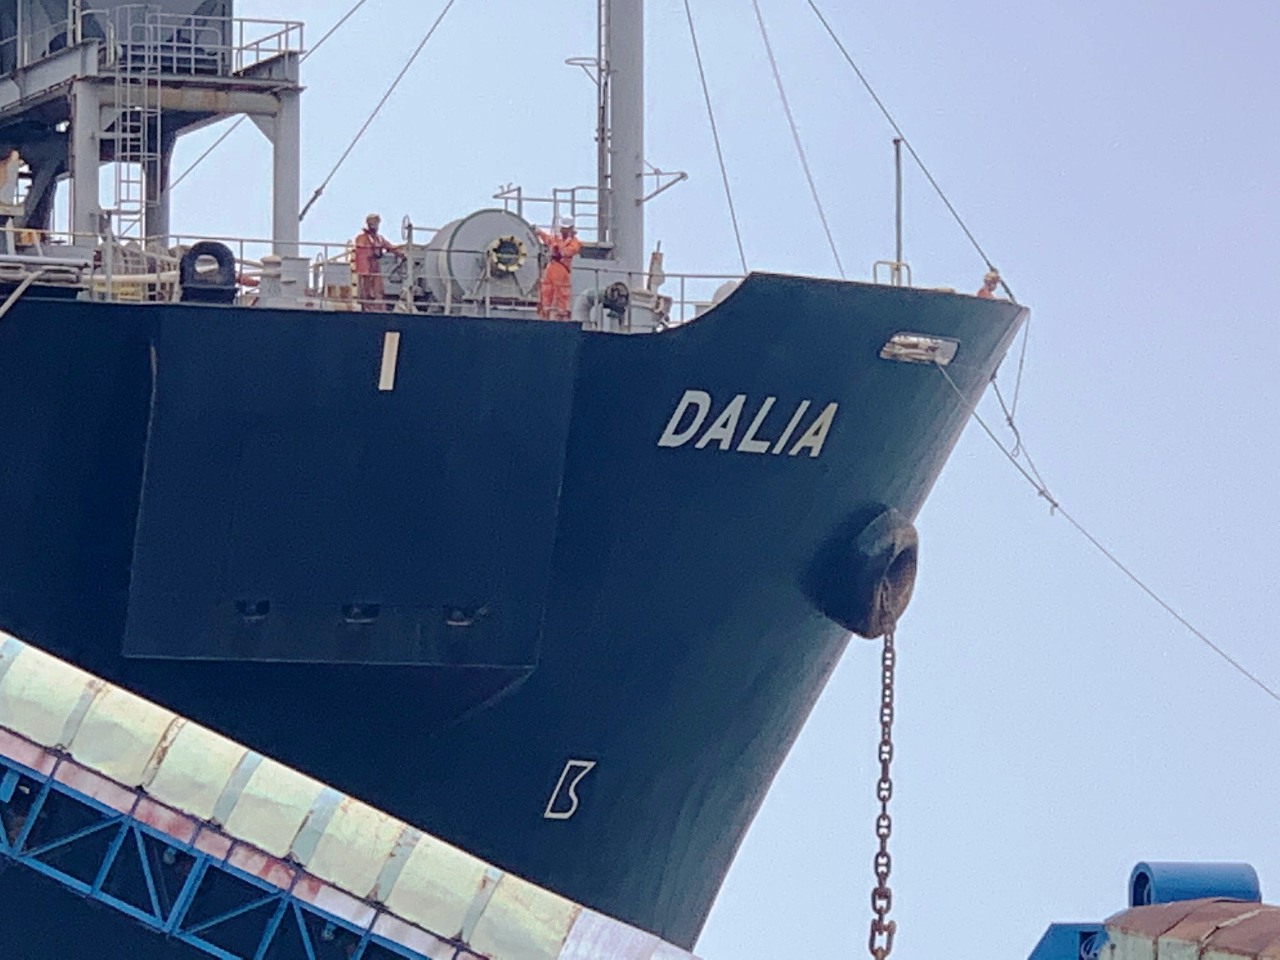 M/V Dalia at Chan May port